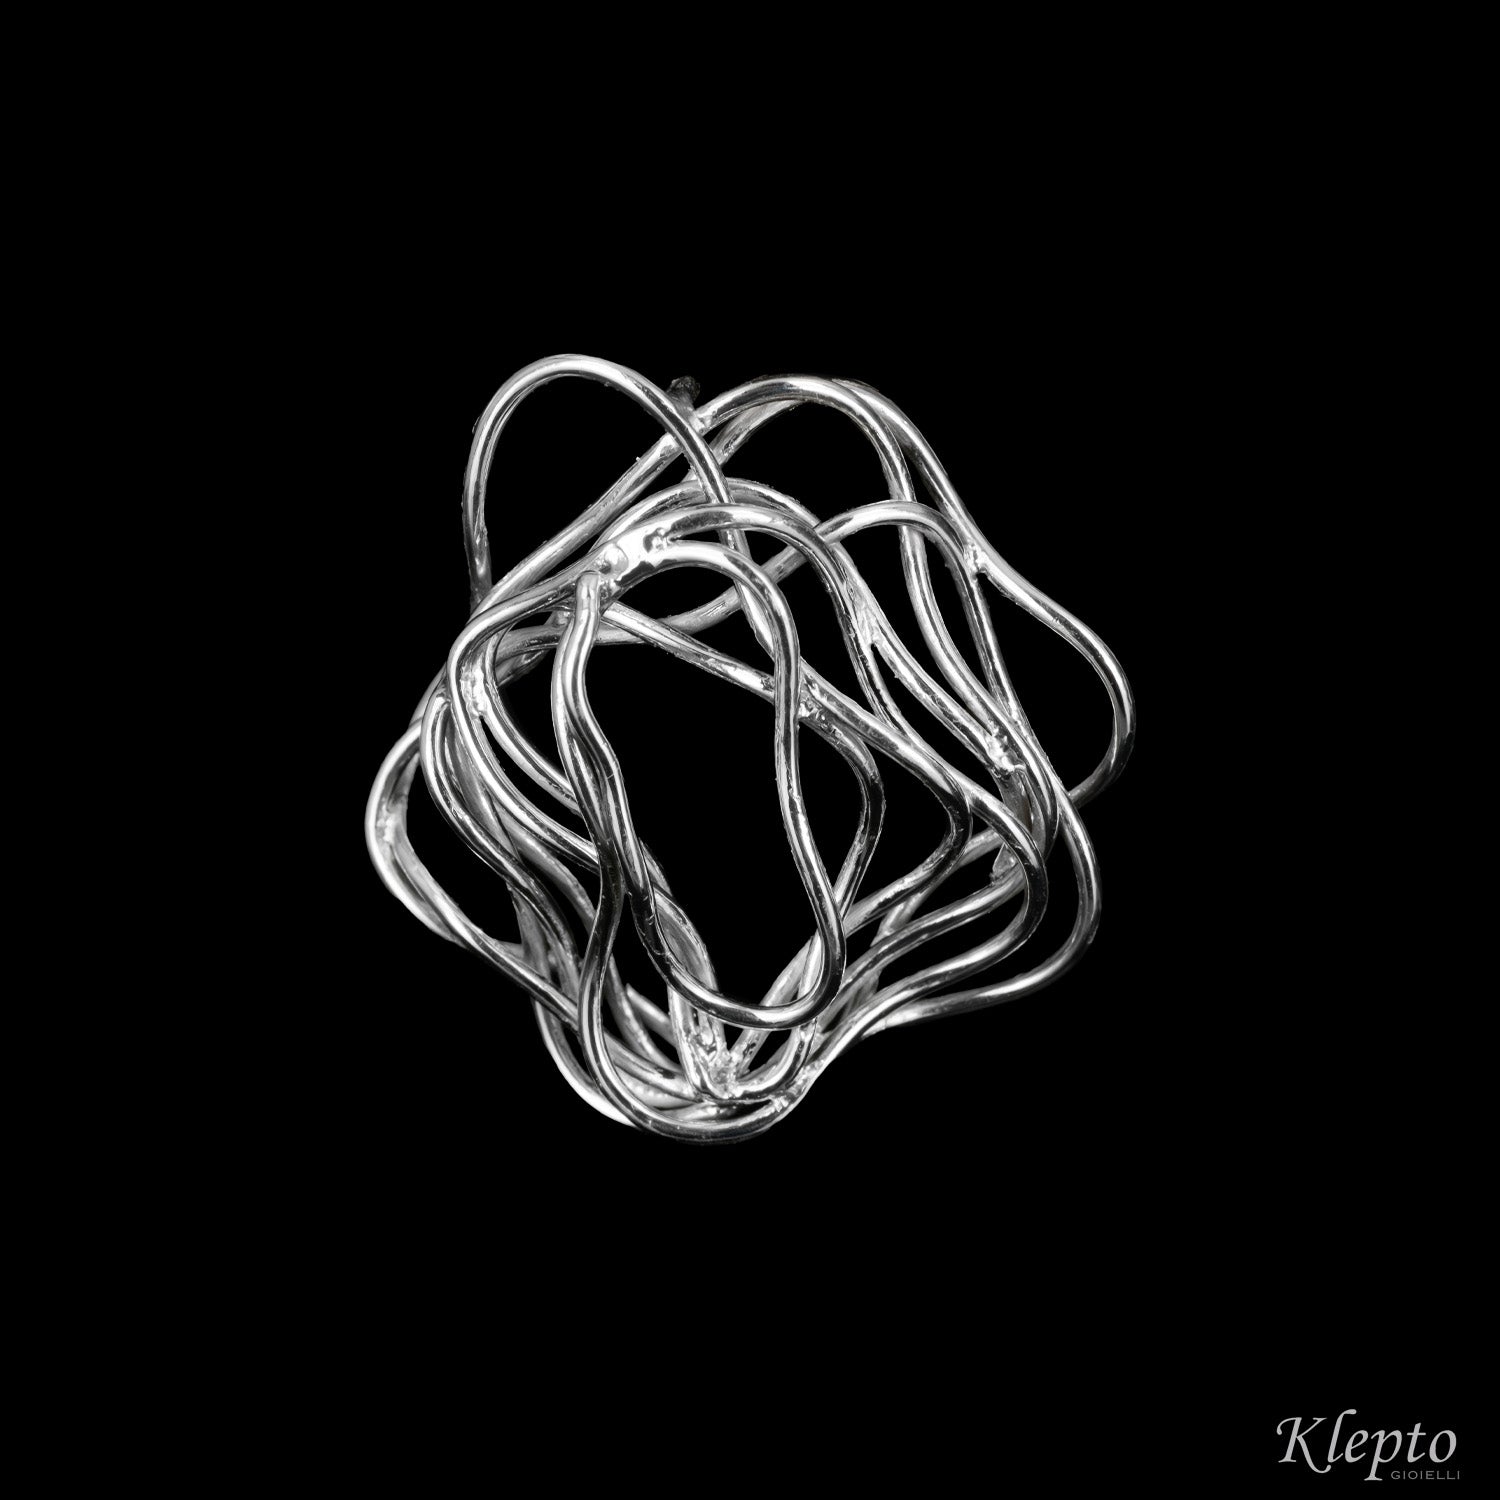 Silnova® silver braided wire earrings